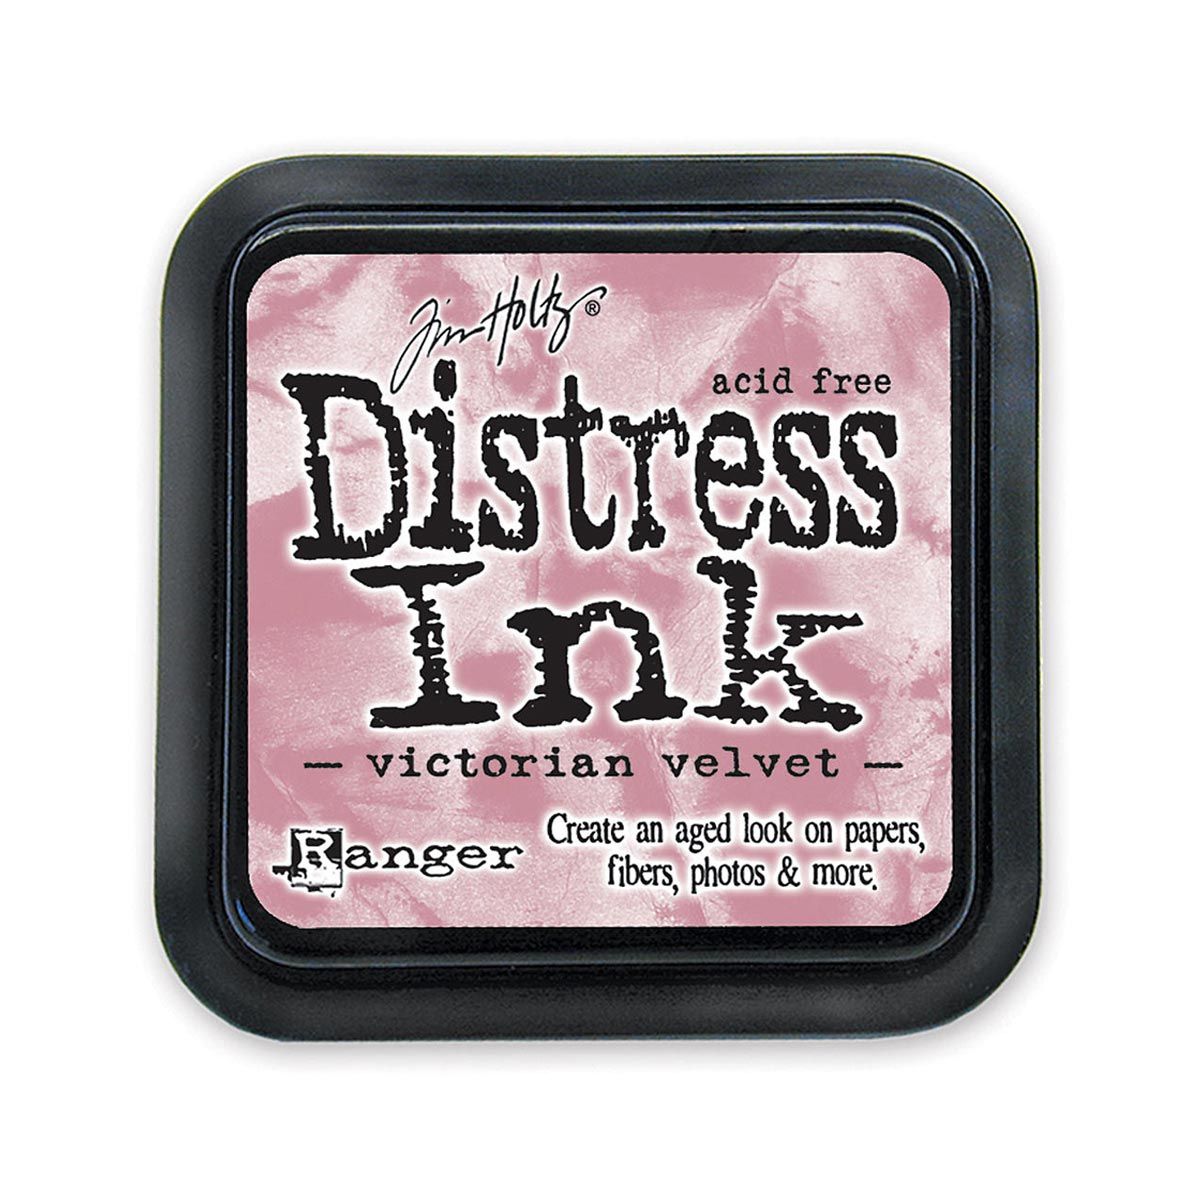 Tim Holtz Mini Distress Ink Pad Victorian Velvet 1x1 inch